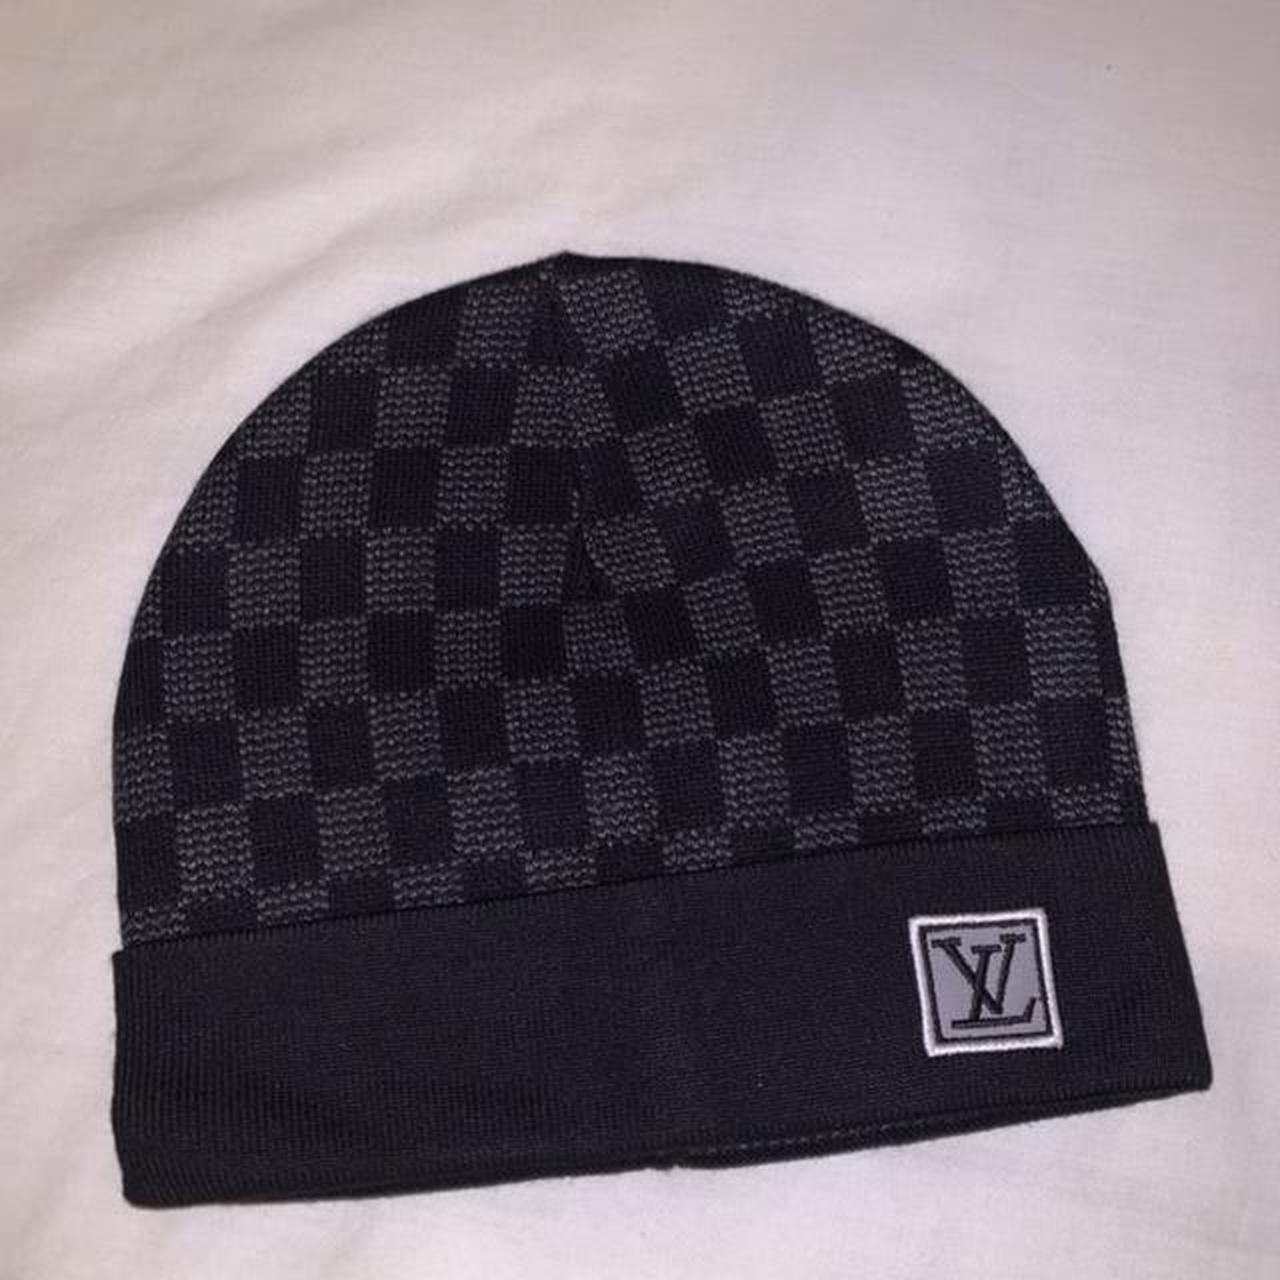 LV Hat - Depop